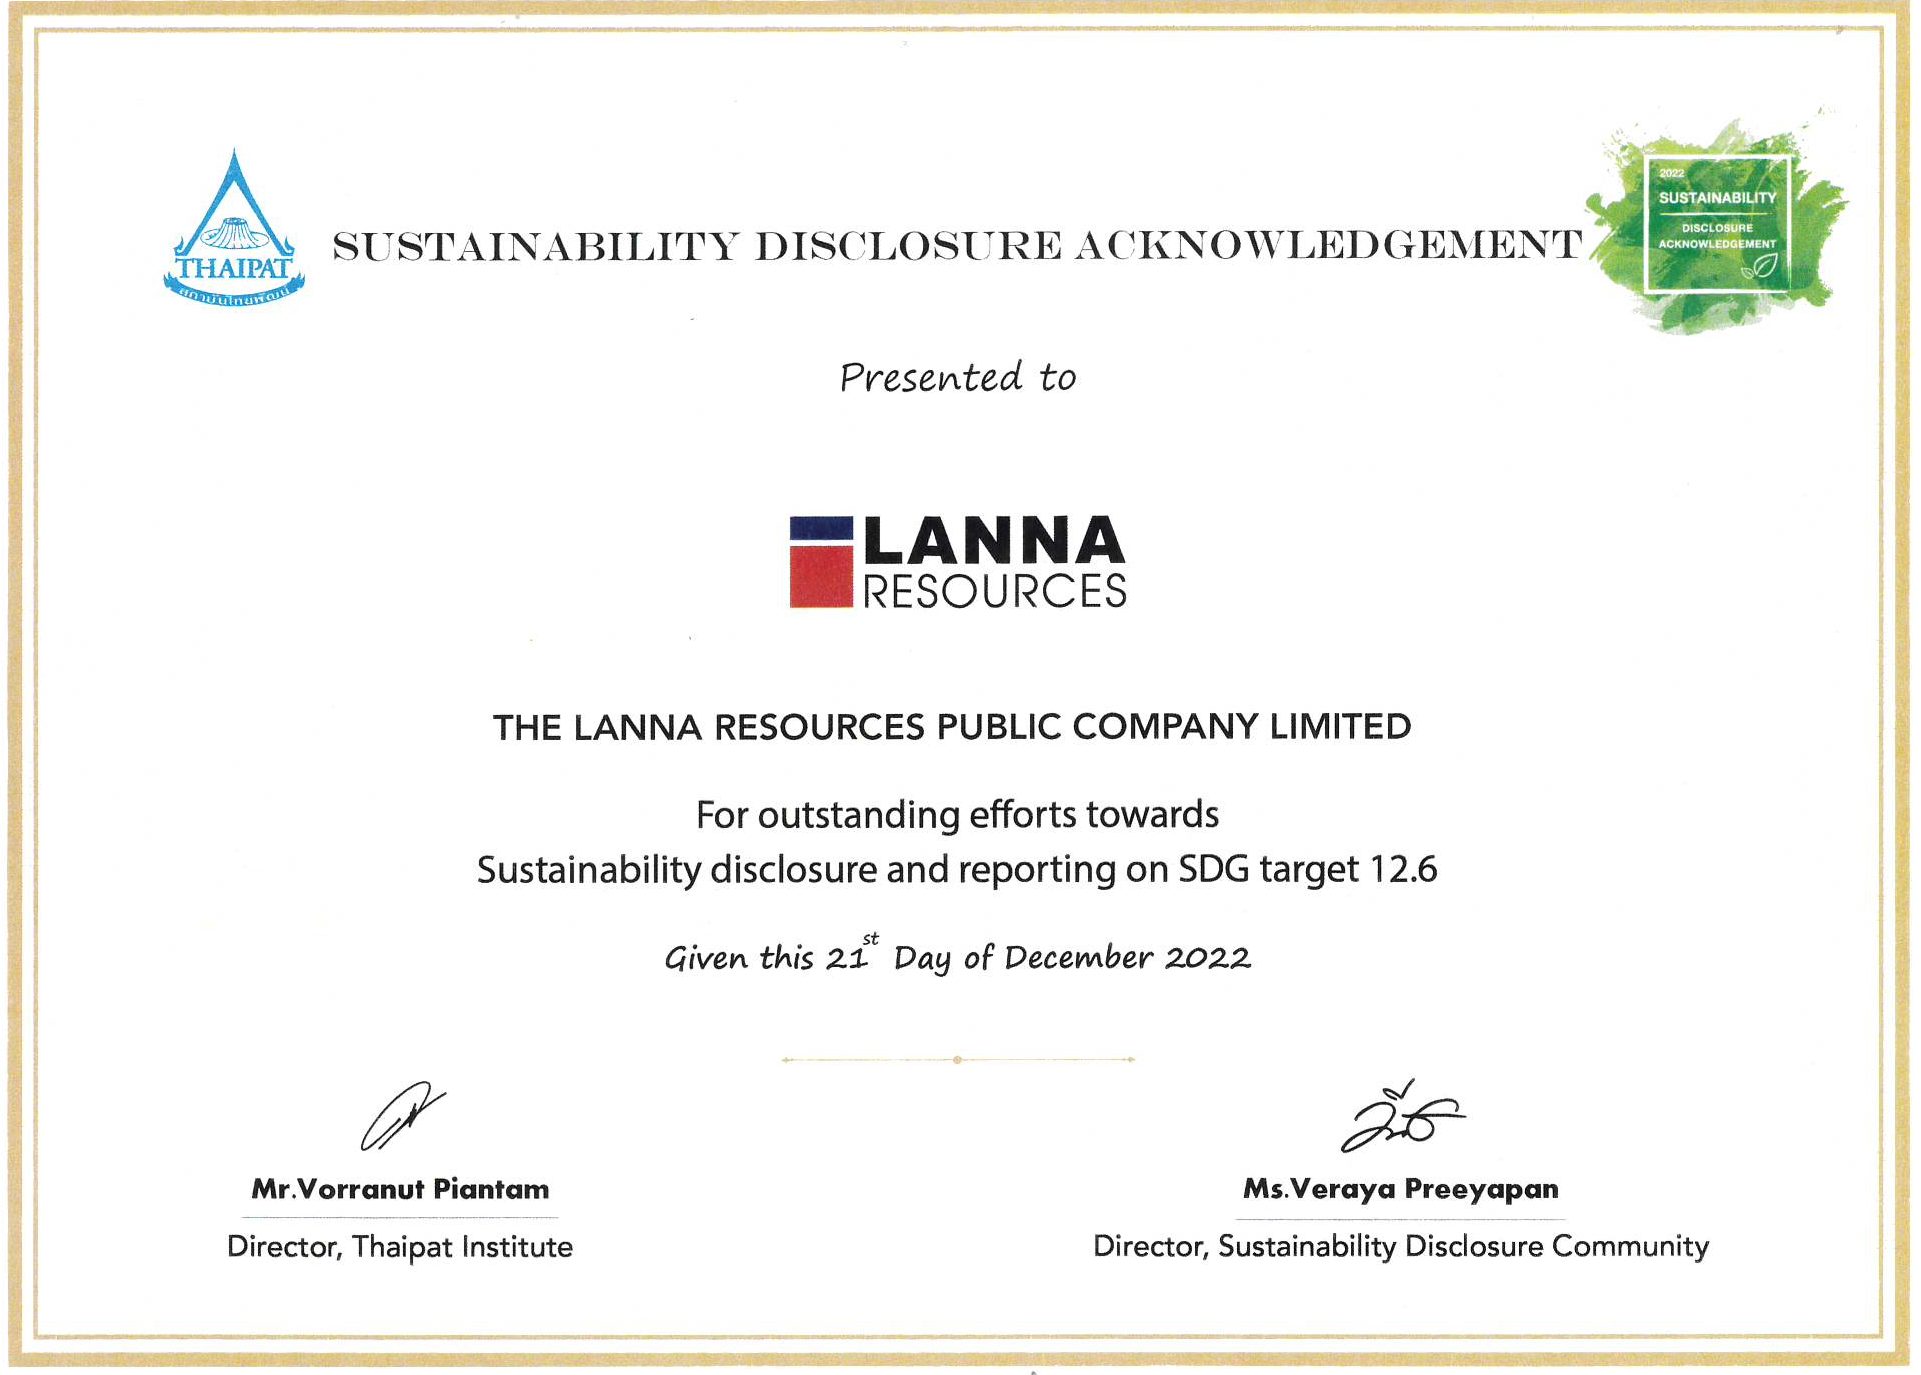 บริษัทฯ ได้รับรางวัล Sustainability Disclosure Acknowledgement ปี 2565